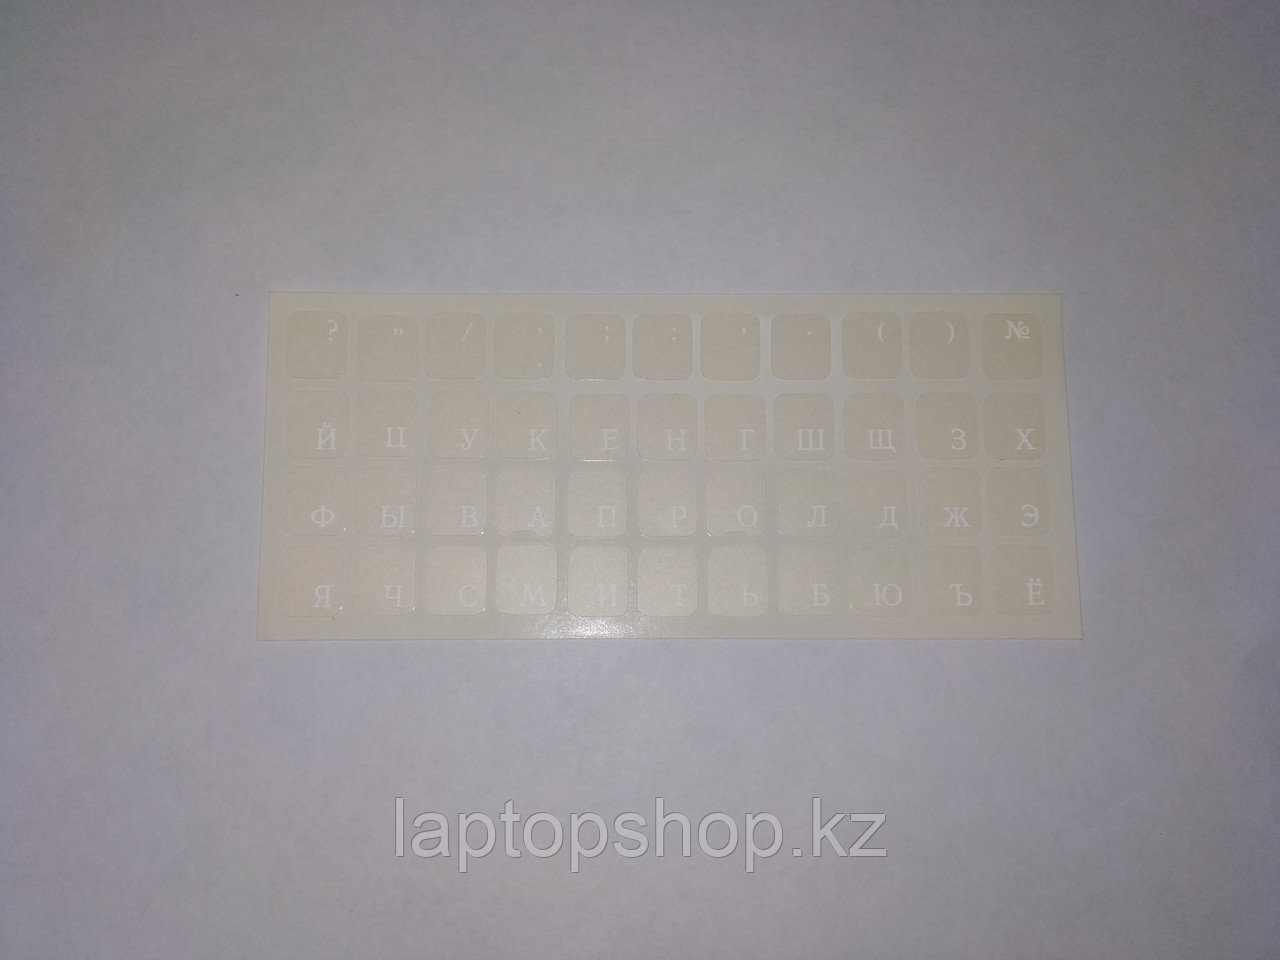 Наклейки на клавиатуру, не стираемые, прозрачные (краска ПОД ПЛЕНКОЙ) - белые буквы